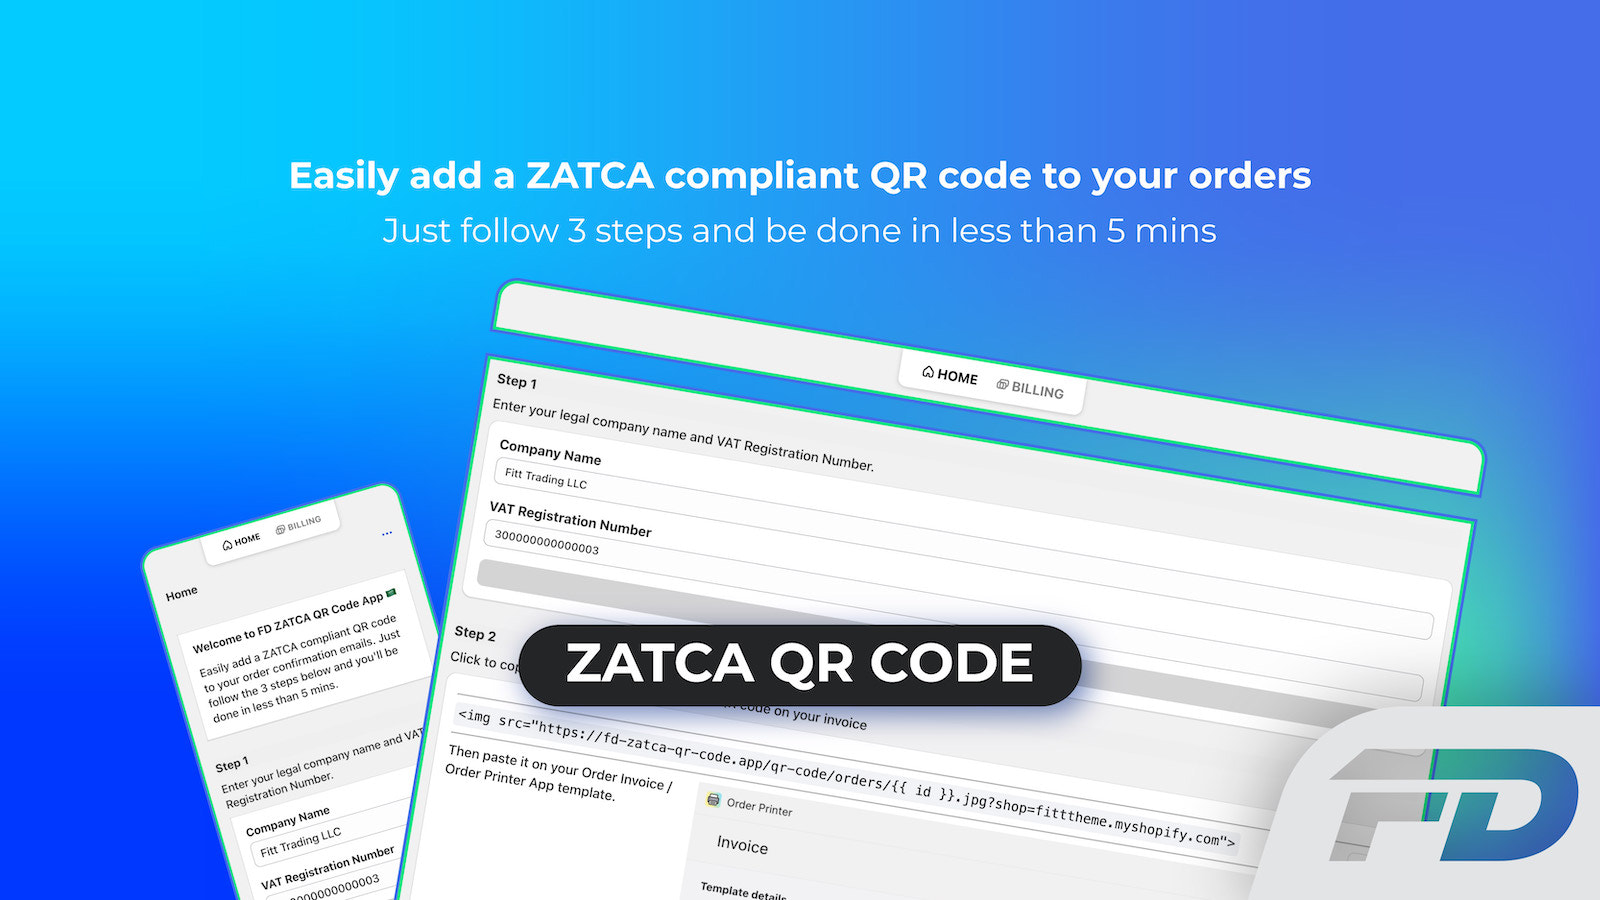 Automatischer ZATCA / Fatoora-konformer QR-Code für Ihre Bestellungen